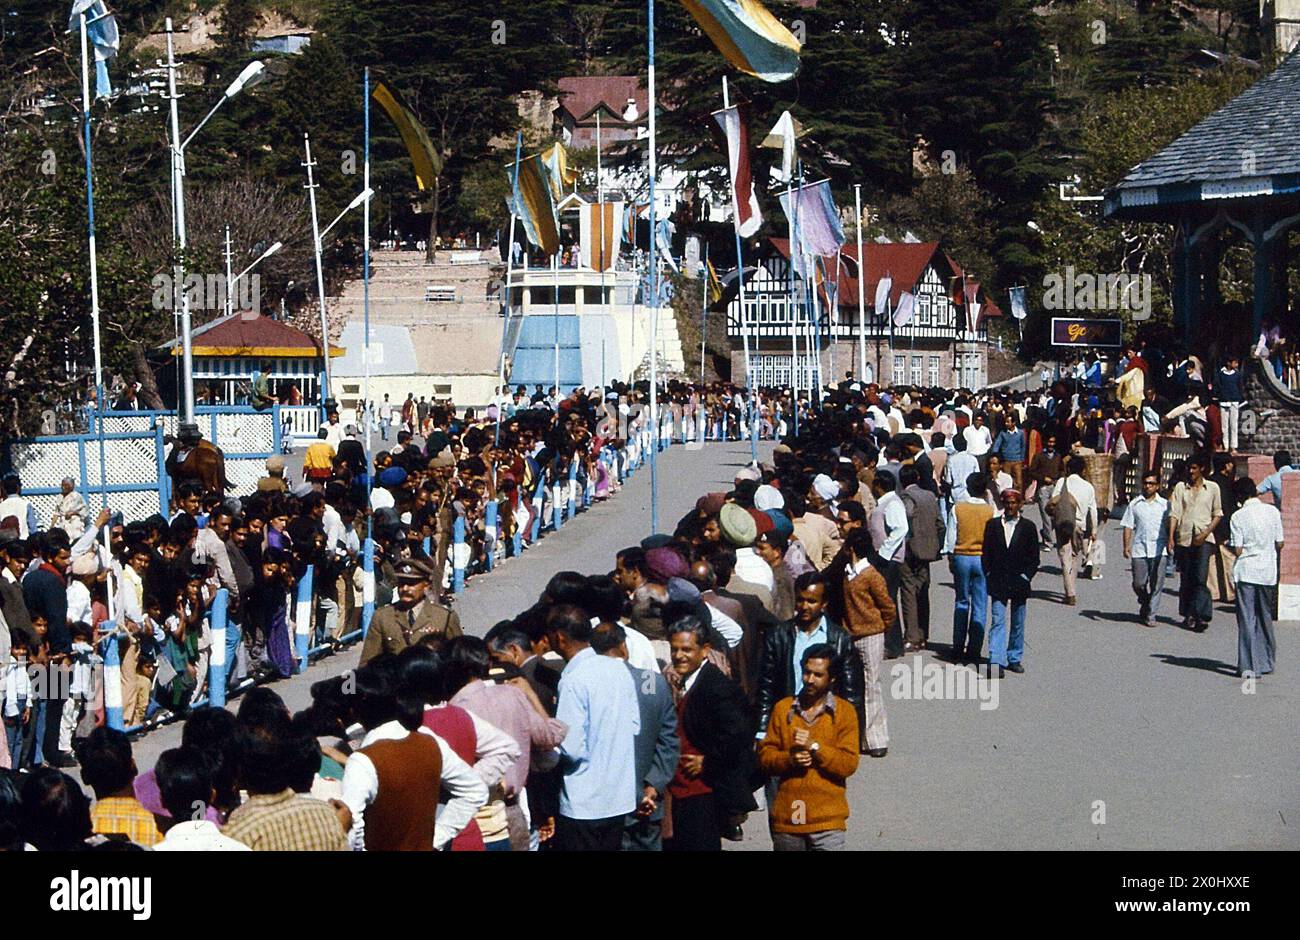 Die Zuschauer warten auf den Besuch der ehemaligen indischen Premierministerin Indira Gandhi in Shimla. Sie führen eine eng gepackte Straße. Es ist mit Flaggen dekoriert. Auf der Straße läuft ein uniformierter Mann den Gang hinunter. [Automatisierte Übersetzung] Stockfoto